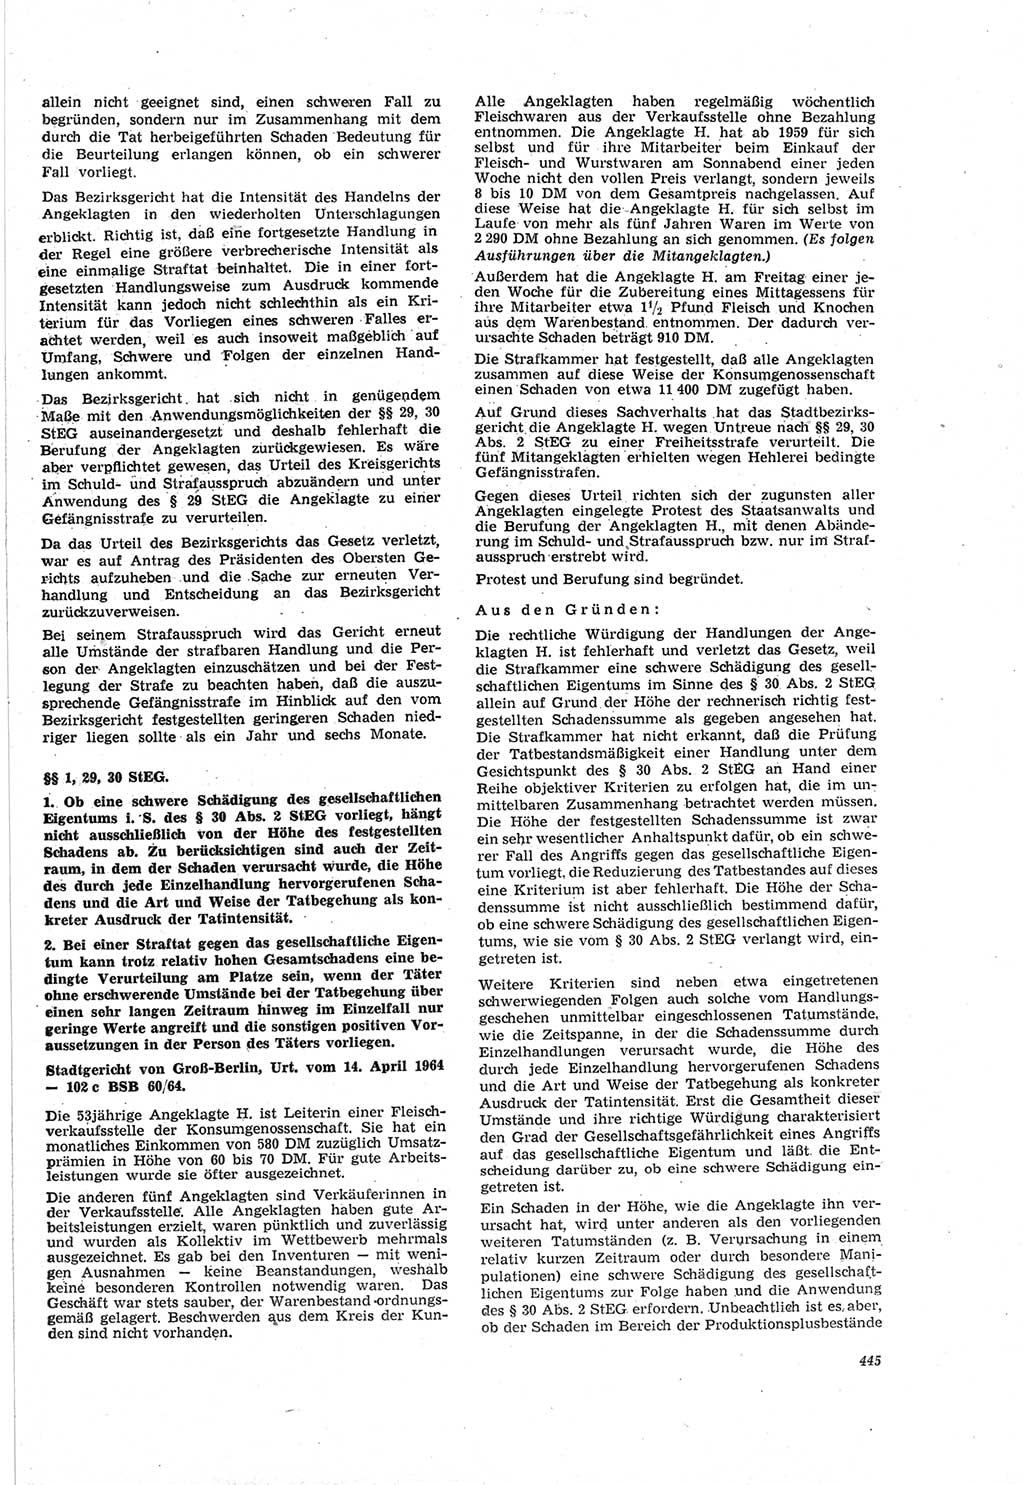 Neue Justiz (NJ), Zeitschrift für Recht und Rechtswissenschaft [Deutsche Demokratische Republik (DDR)], 18. Jahrgang 1964, Seite 445 (NJ DDR 1964, S. 445)